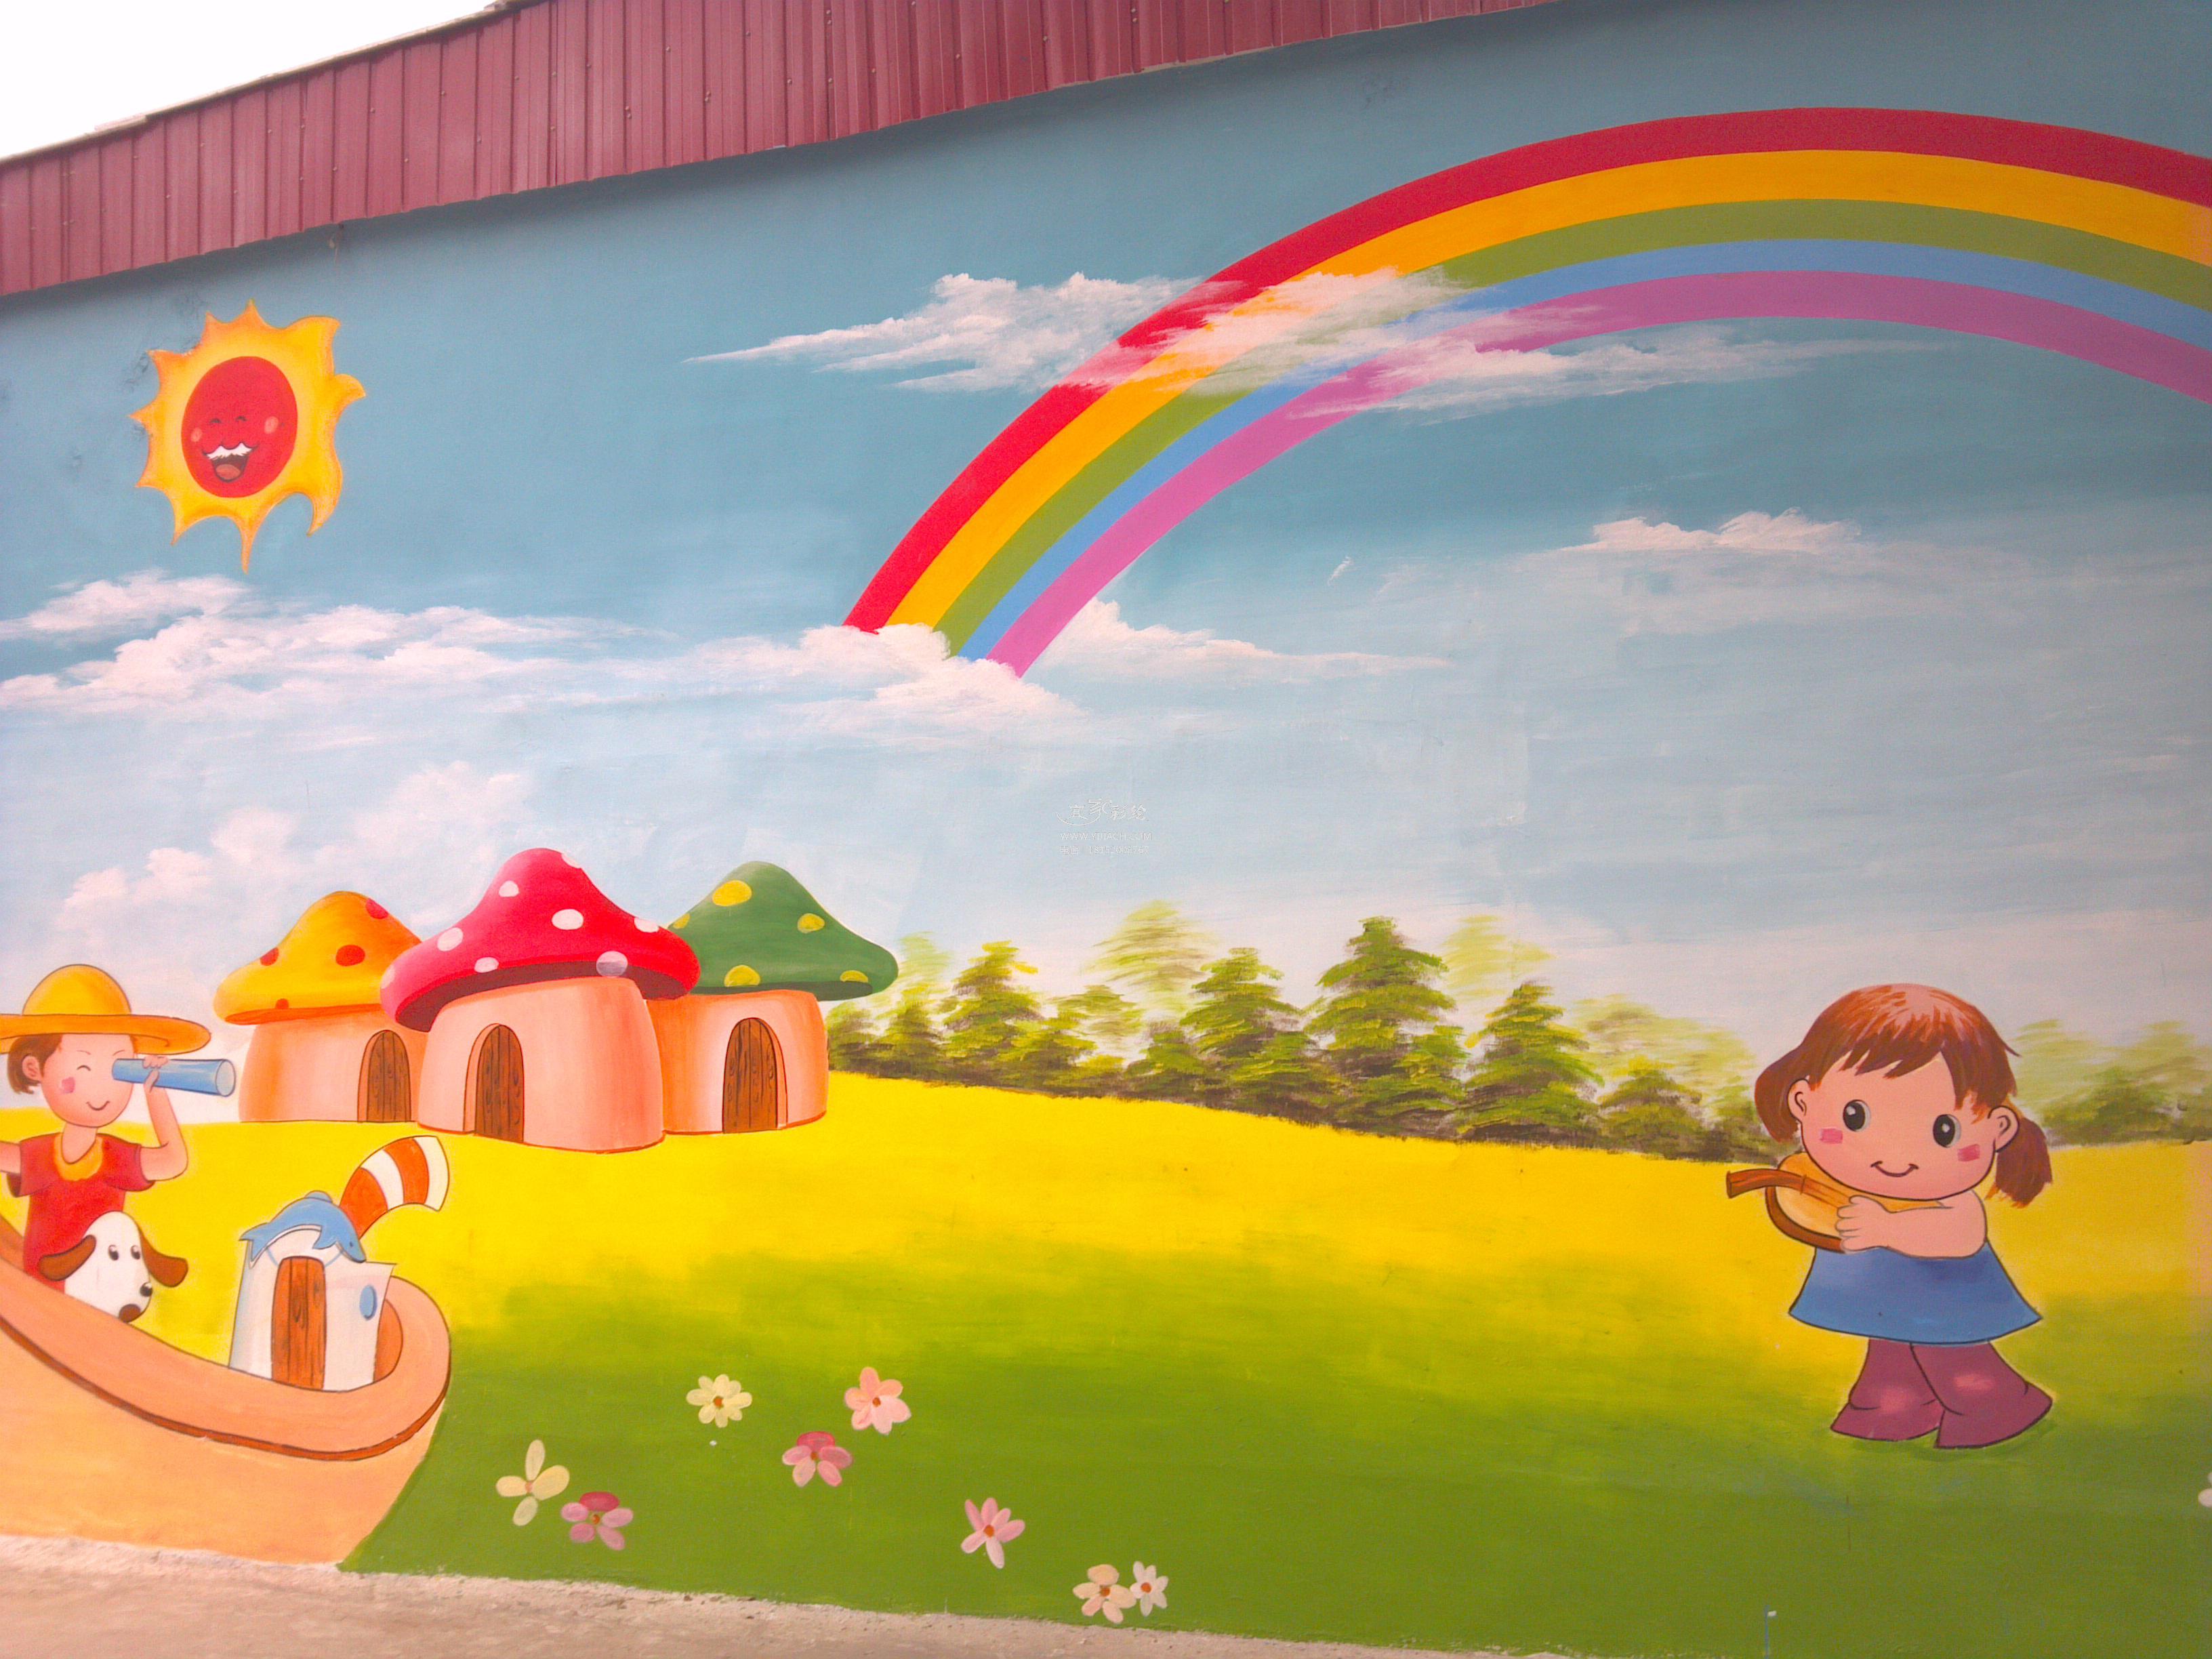 绘制儿童房的墙体彩绘需要注意些什么呢？